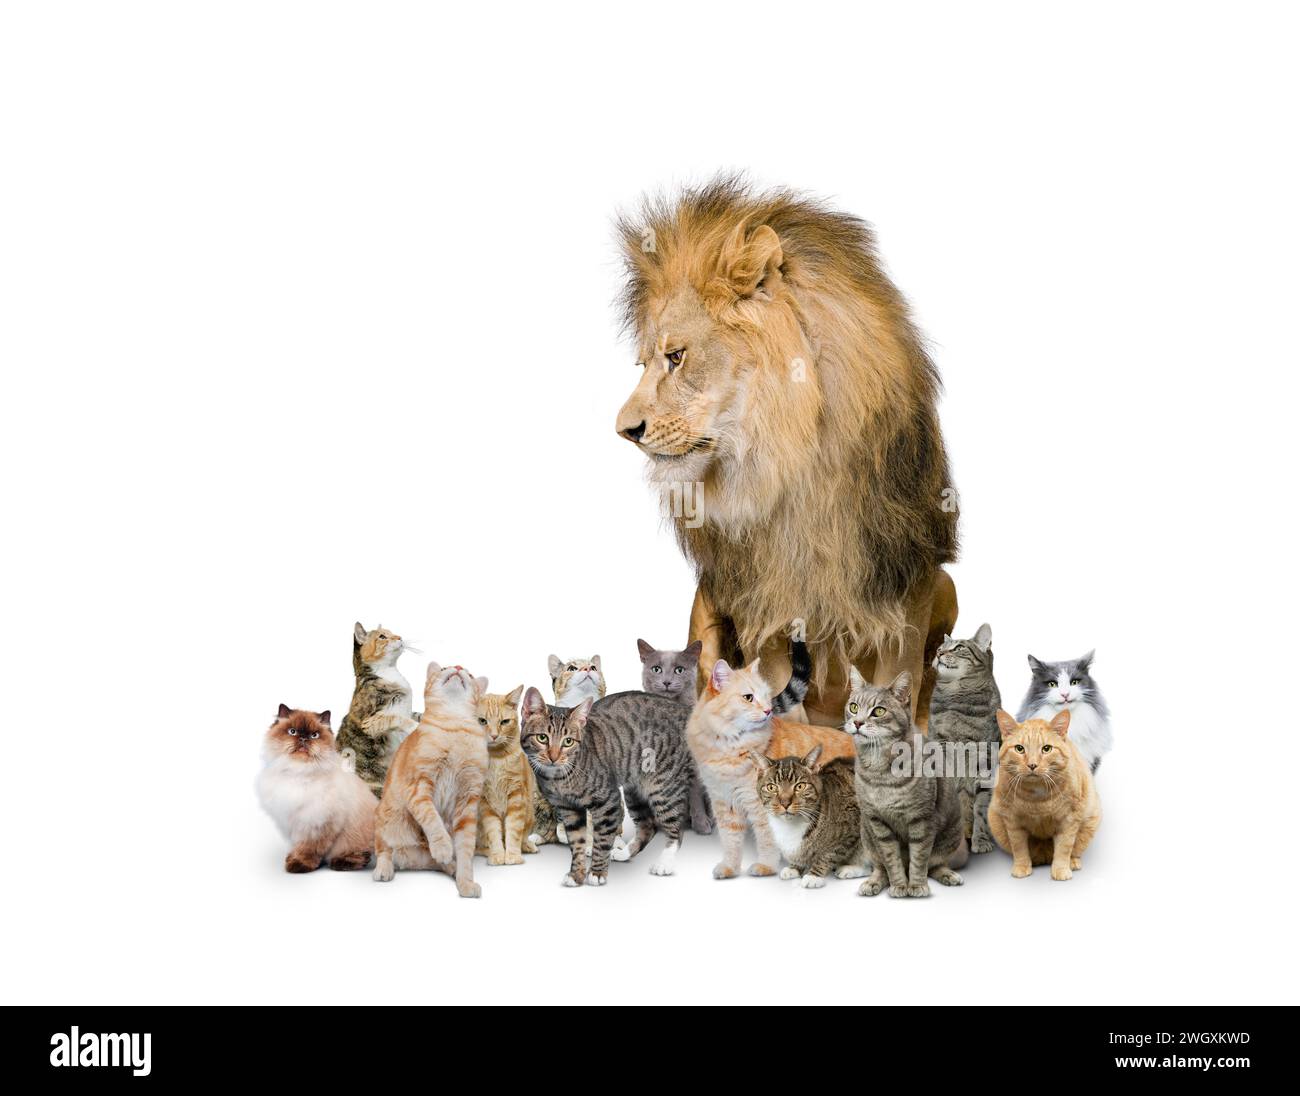 Un lion est assis au milieu d'un clowder, ou groupe, de chats sur un fond blanc dans une image amusante sur le contraste, la dominance et l'inattendu. Banque D'Images